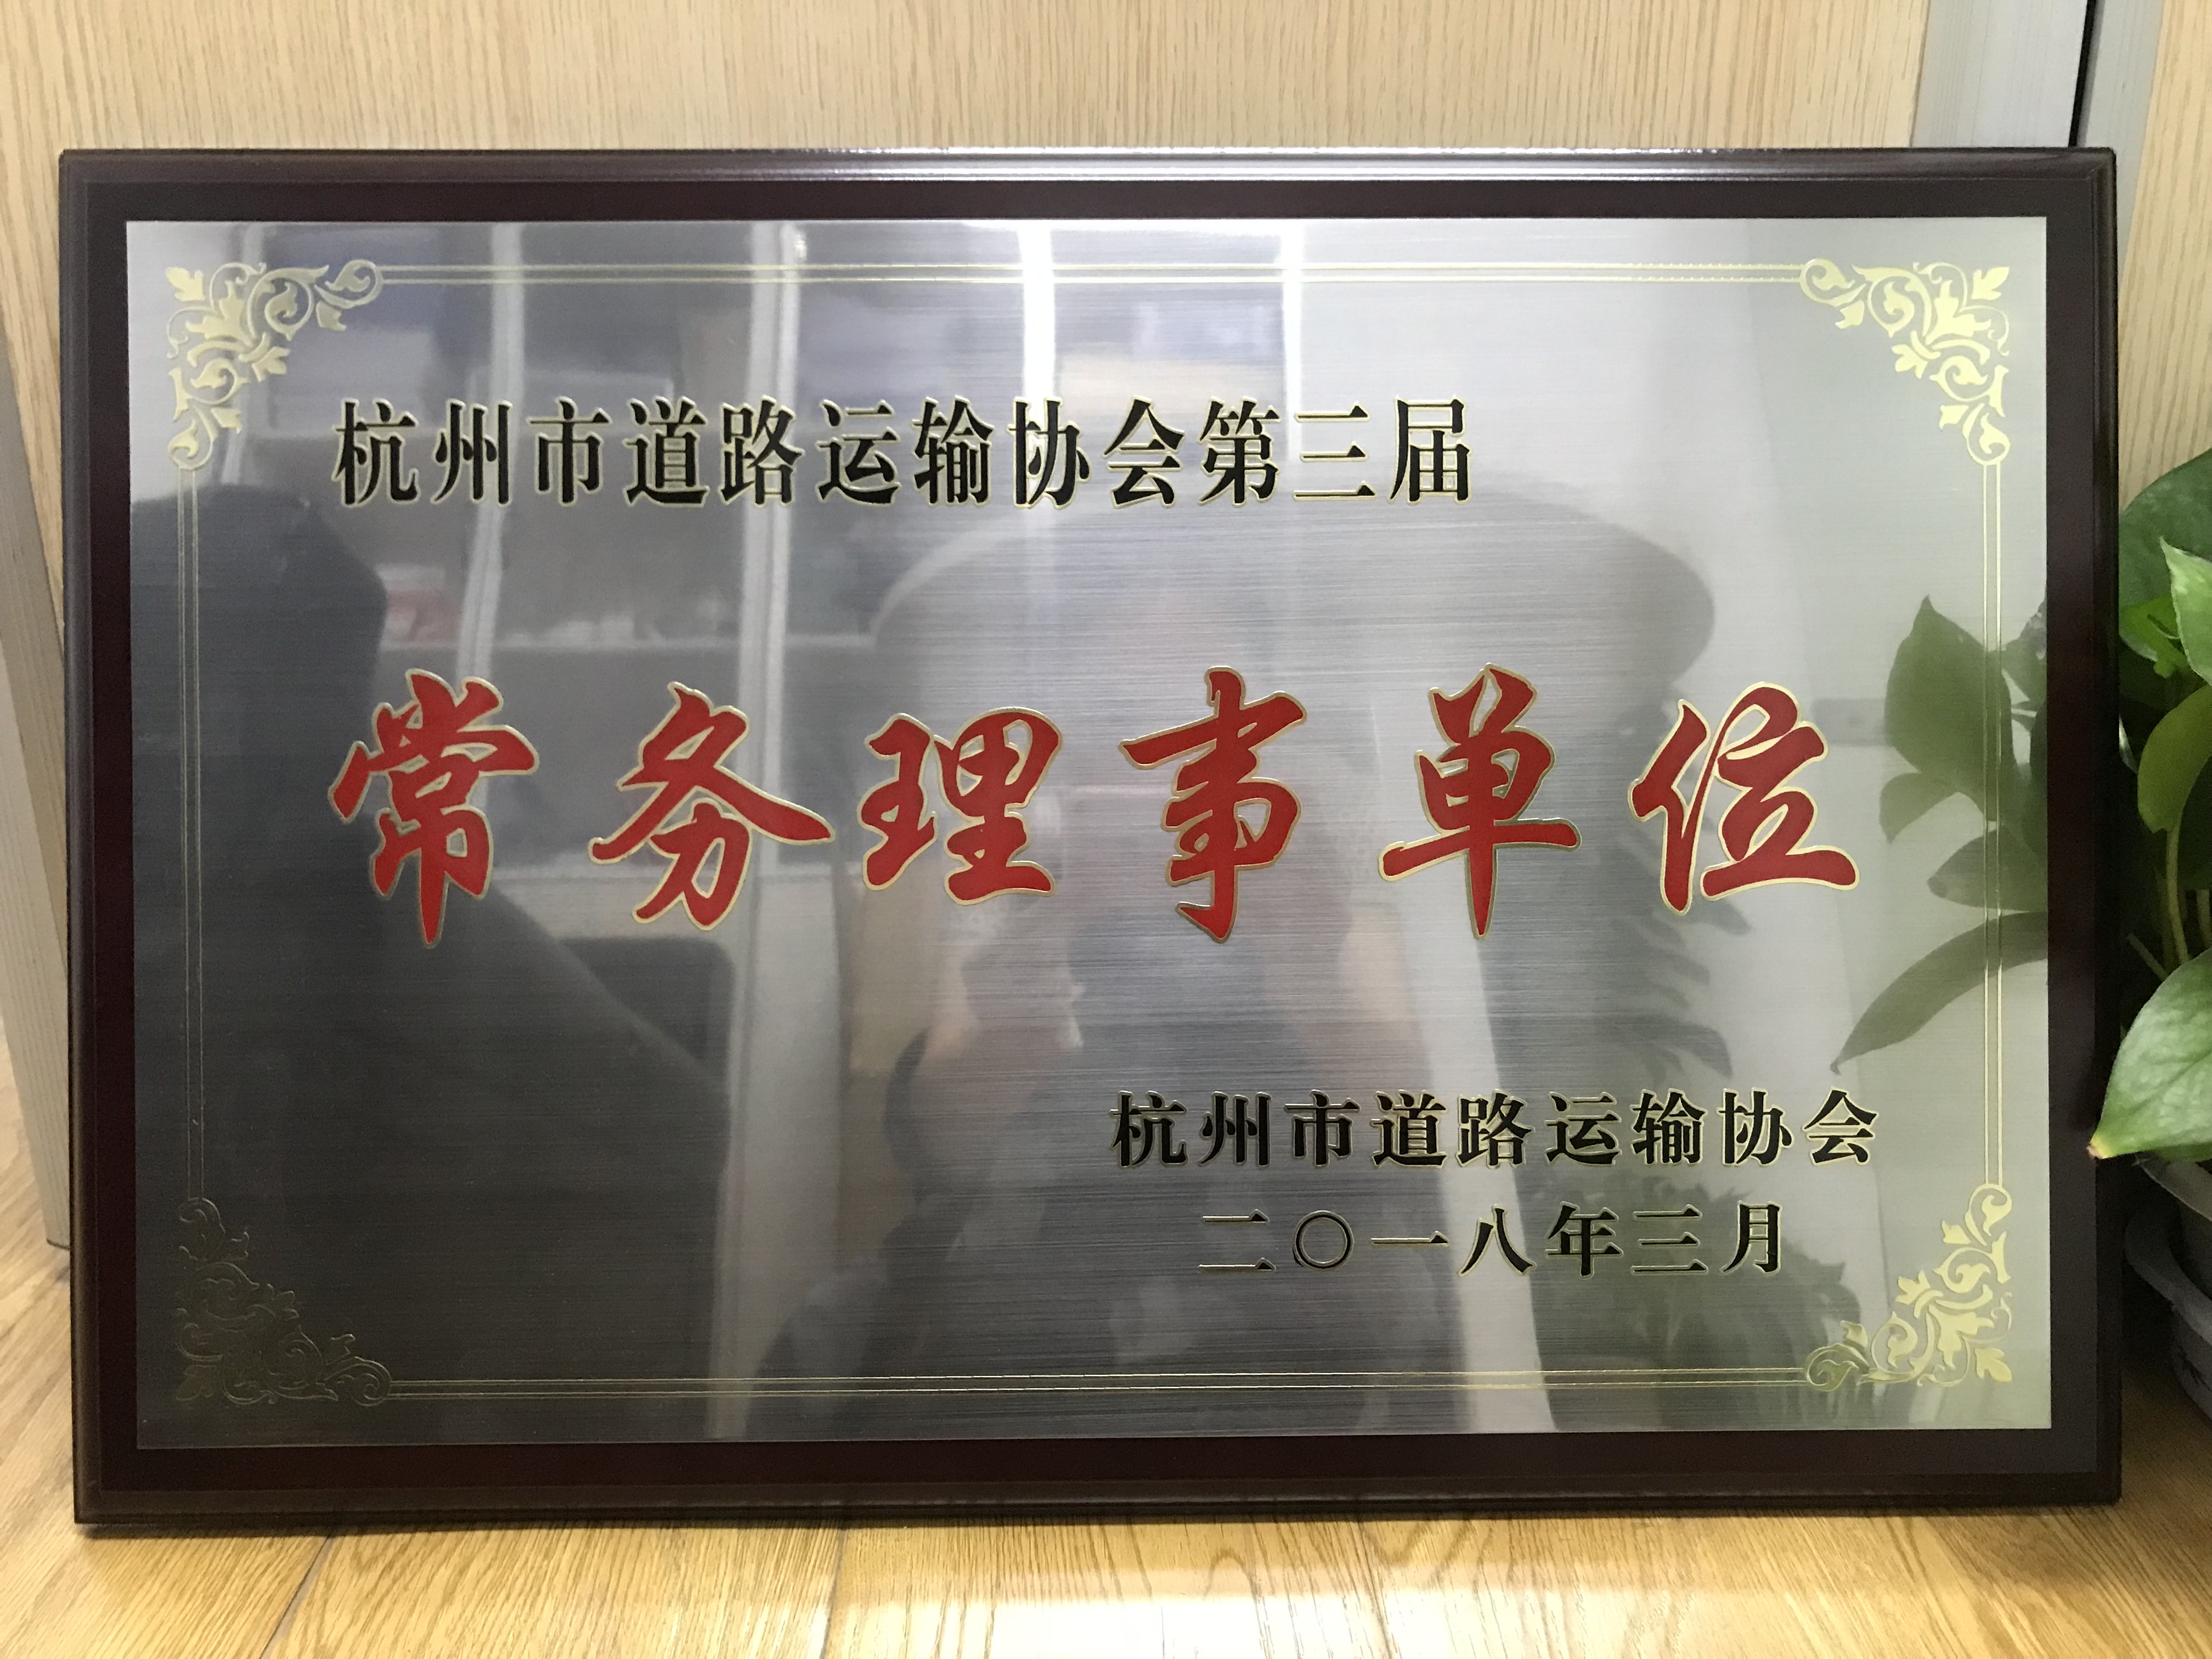 2018.03_杭州市道路运输协会第三届常务理事单位.JPG